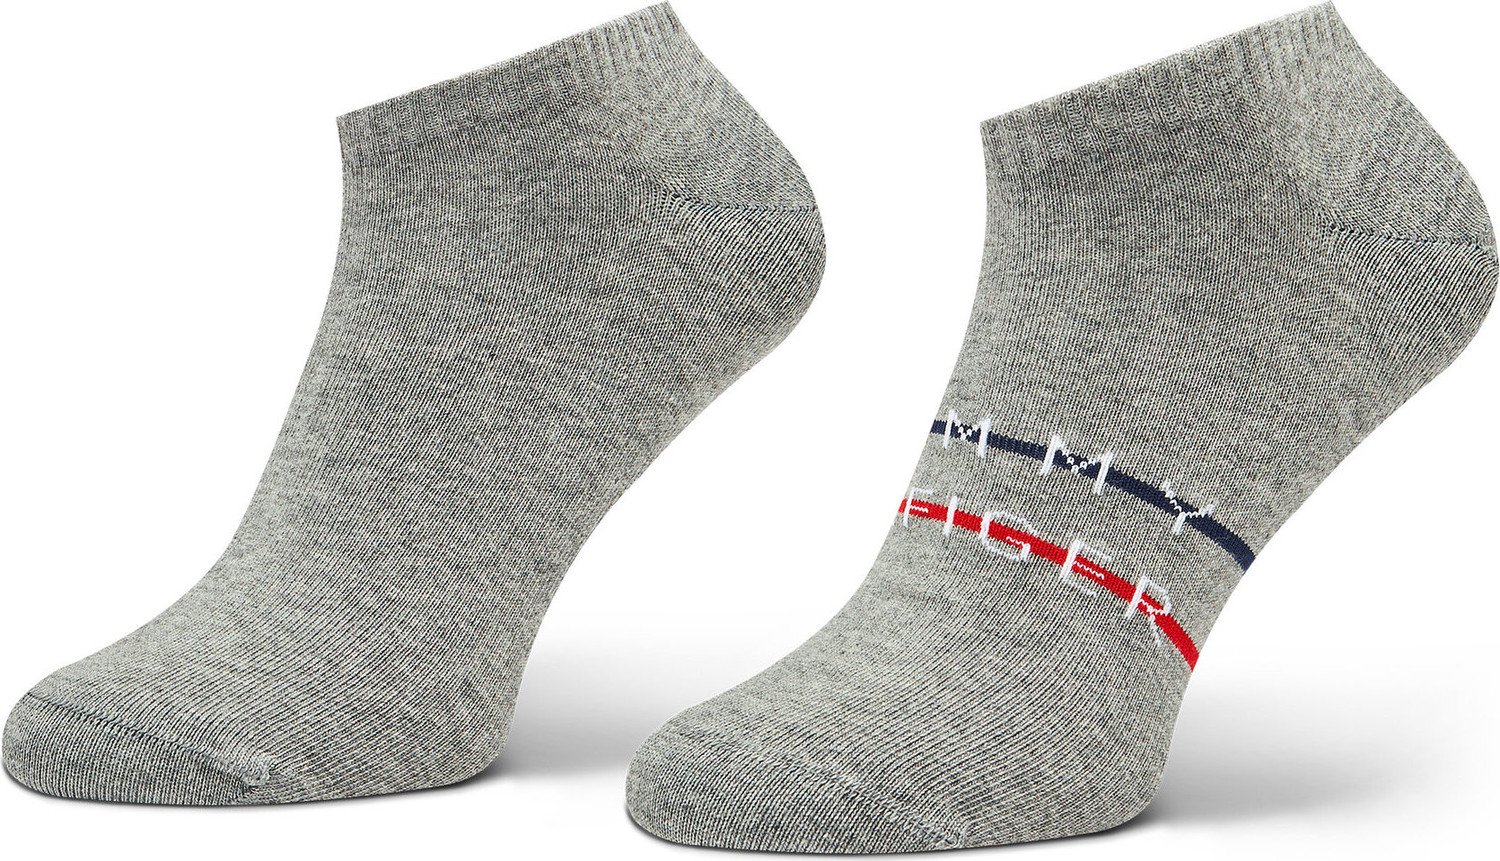 Sada 2 párů pánských nízkých ponožek Tommy Hilfiger 701222188 Mid Grey Melange 002